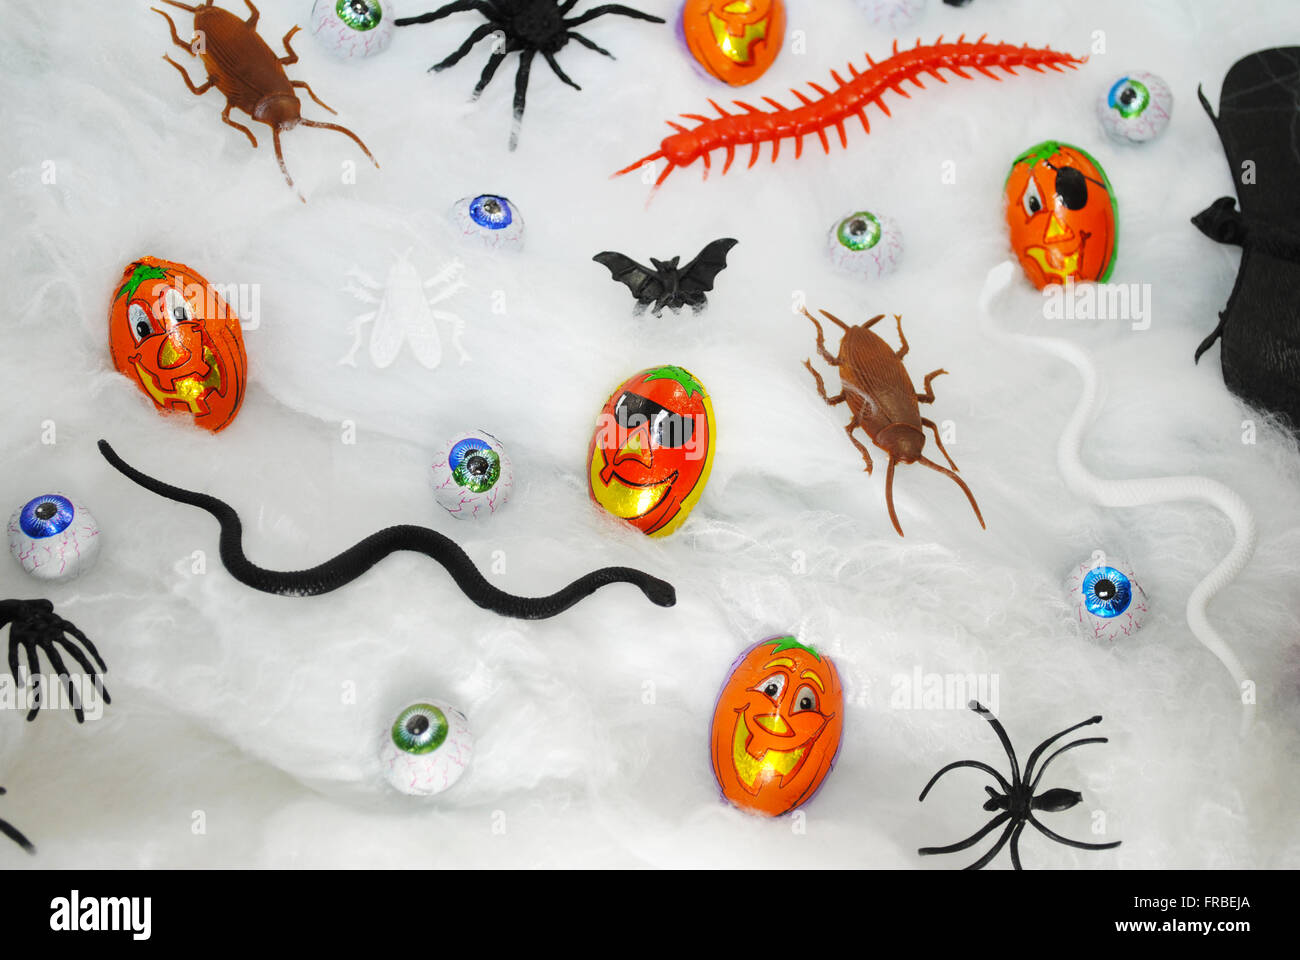 Verschiedene Halloween Süßigkeiten und Spielsachen auf einem Gurtband-Hintergrund Stockfoto